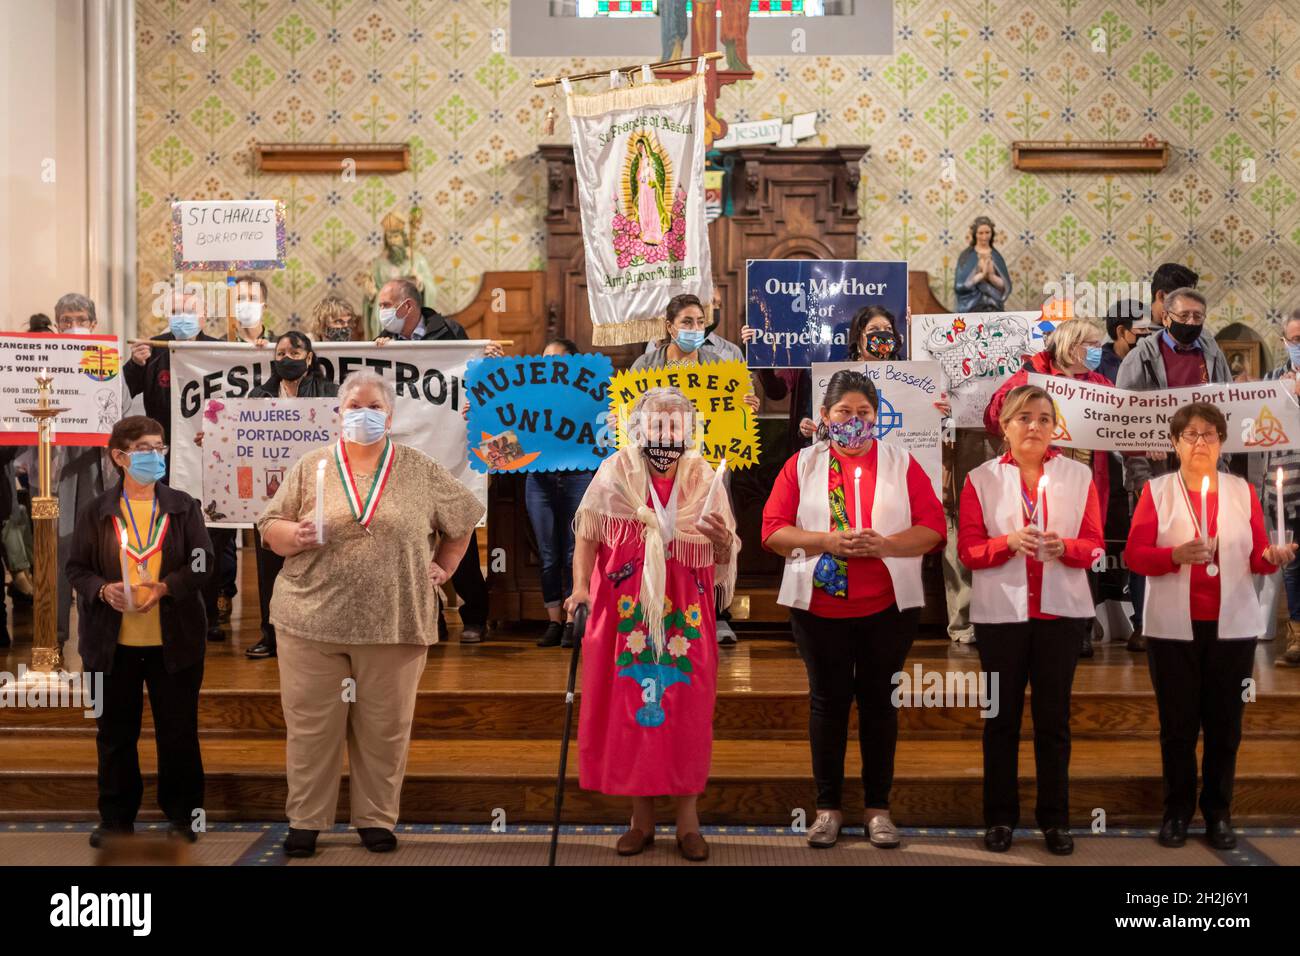 Detroit, Michigan - una messa presso la Chiesa Cattolica della Santissima Trinità a sostegno degli immigrati in tutto il mondo. La messa è stata ospitata da sconosciuti No More, un imm Foto Stock